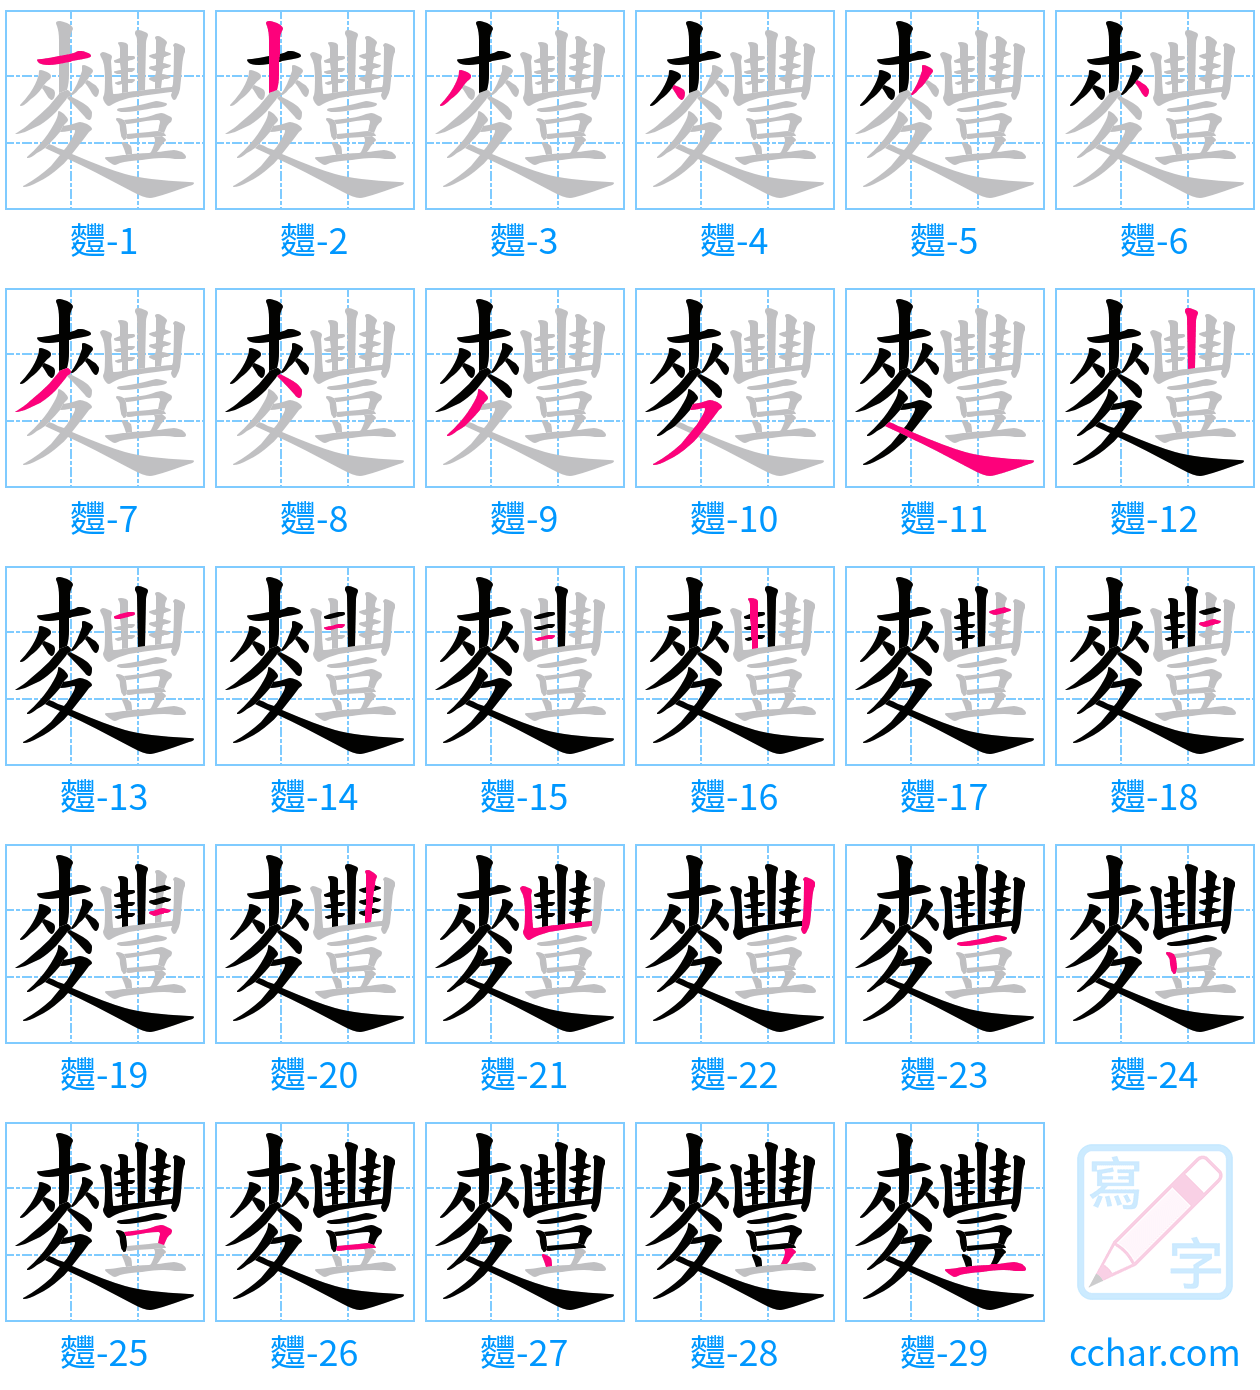 麷 stroke order step-by-step diagram